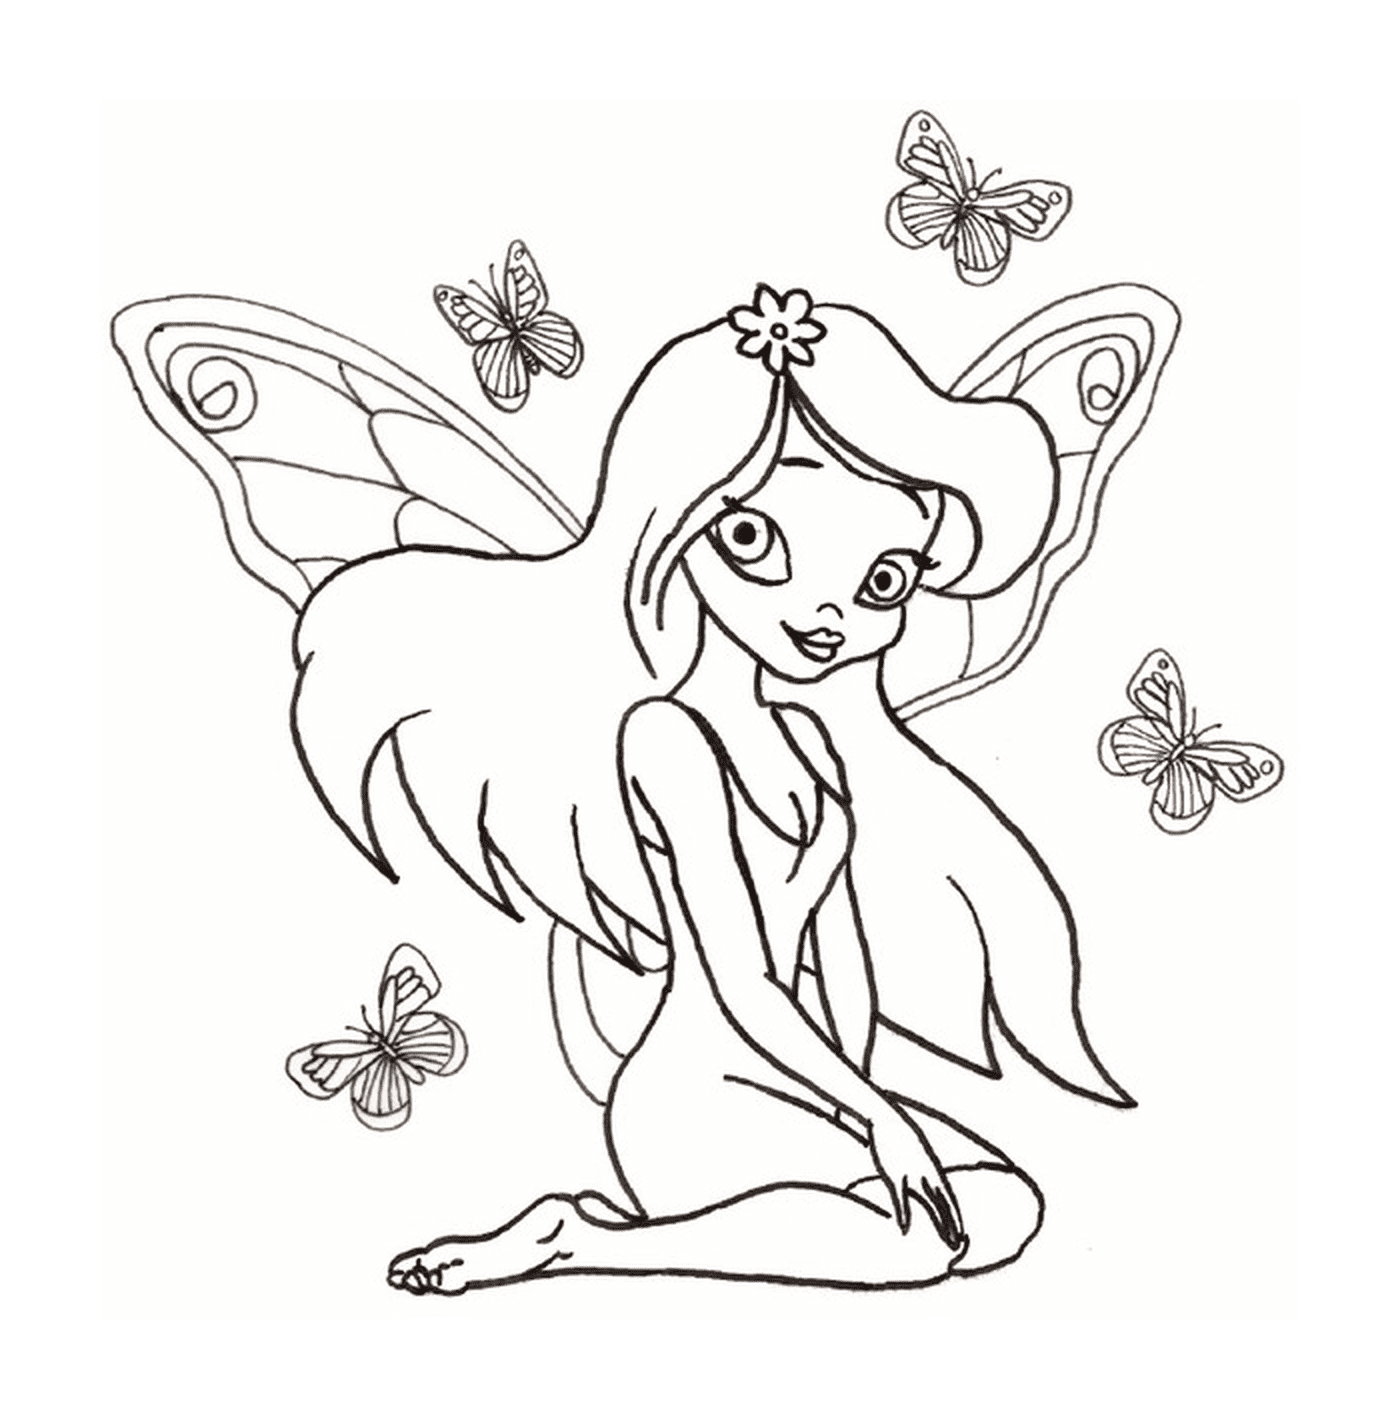  Una fata circondata da farfalle 